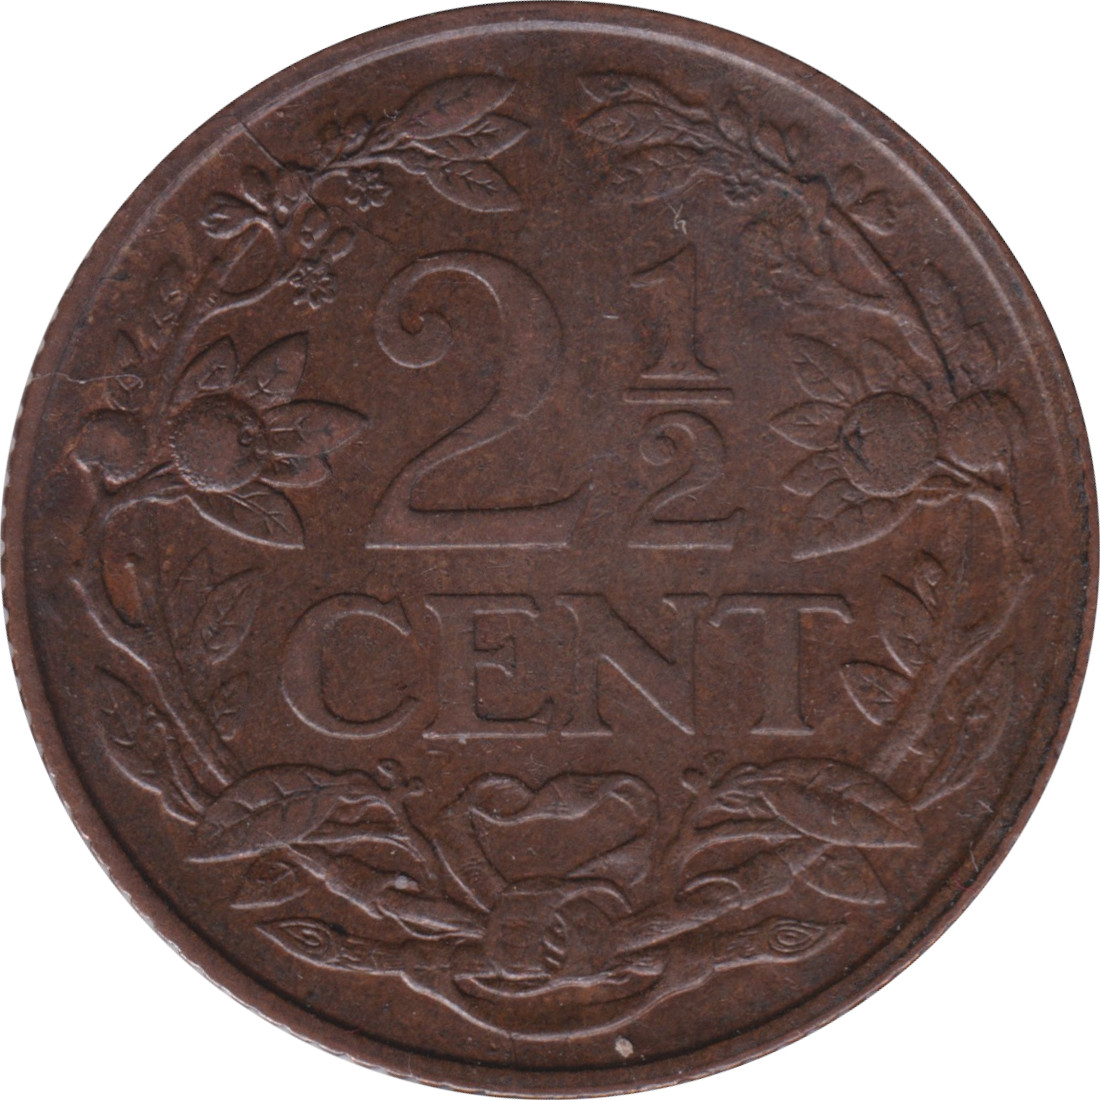 2 1/2 cents - Lion héraldique - Grandes branches